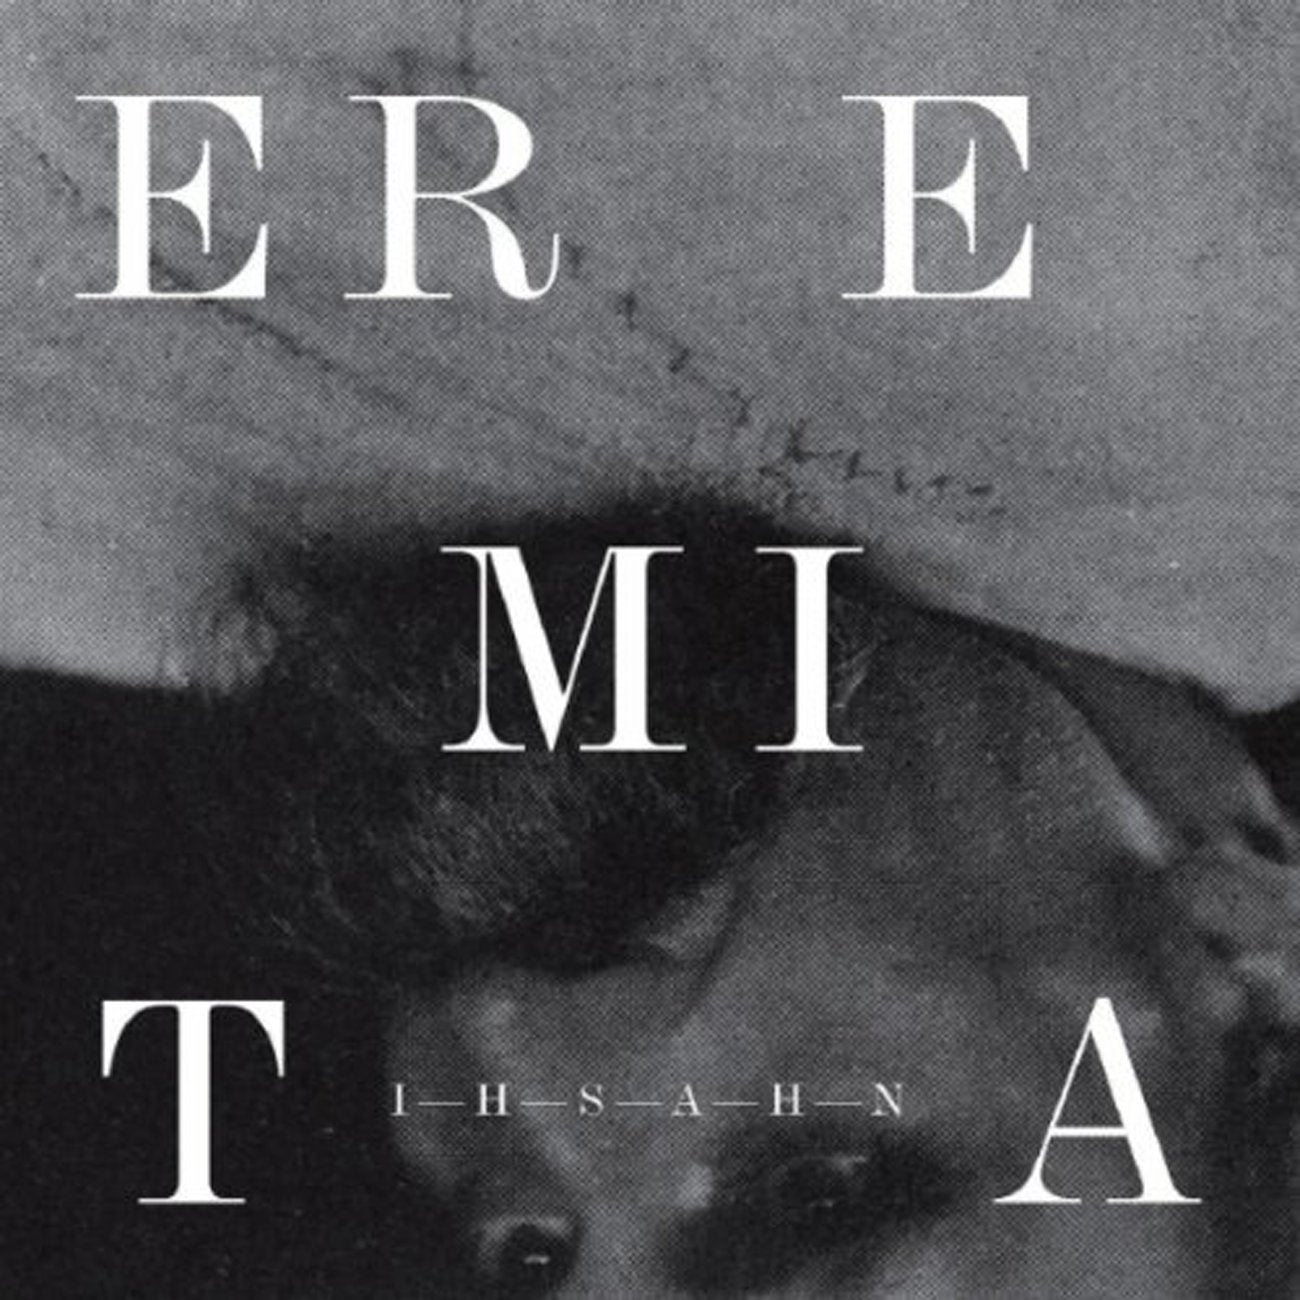 Ihsahn- Eremita - Darkside Records